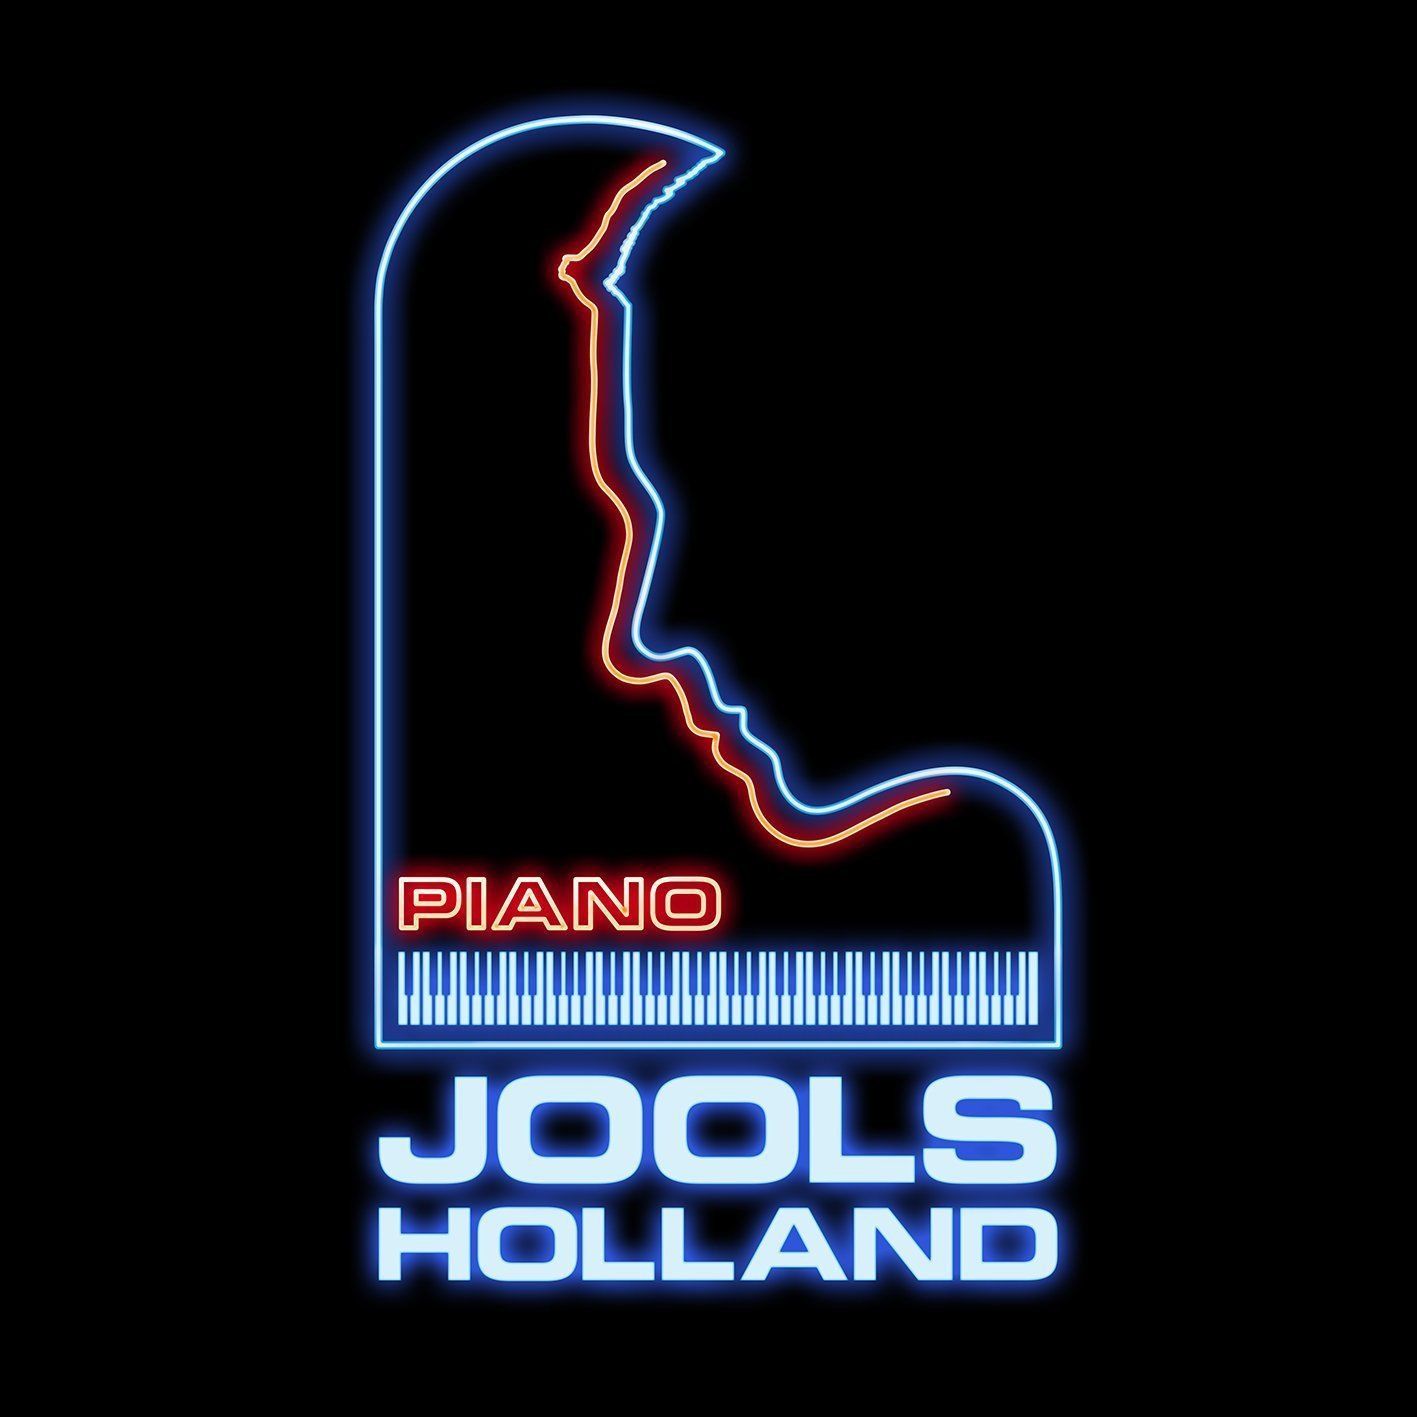 JOOLS HOLLAND - Piano cover 